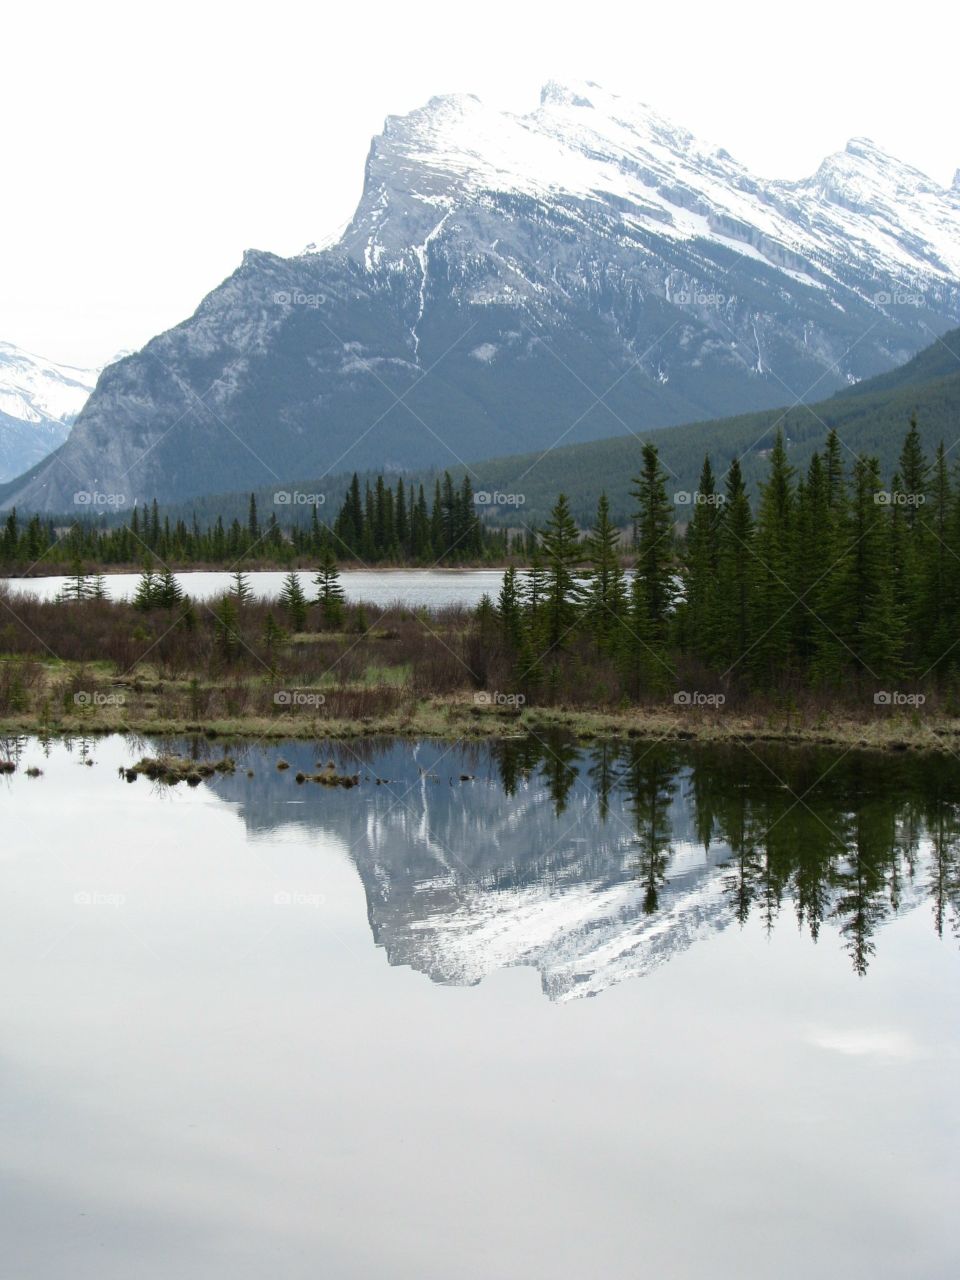 Mountain reflexion in the lake 